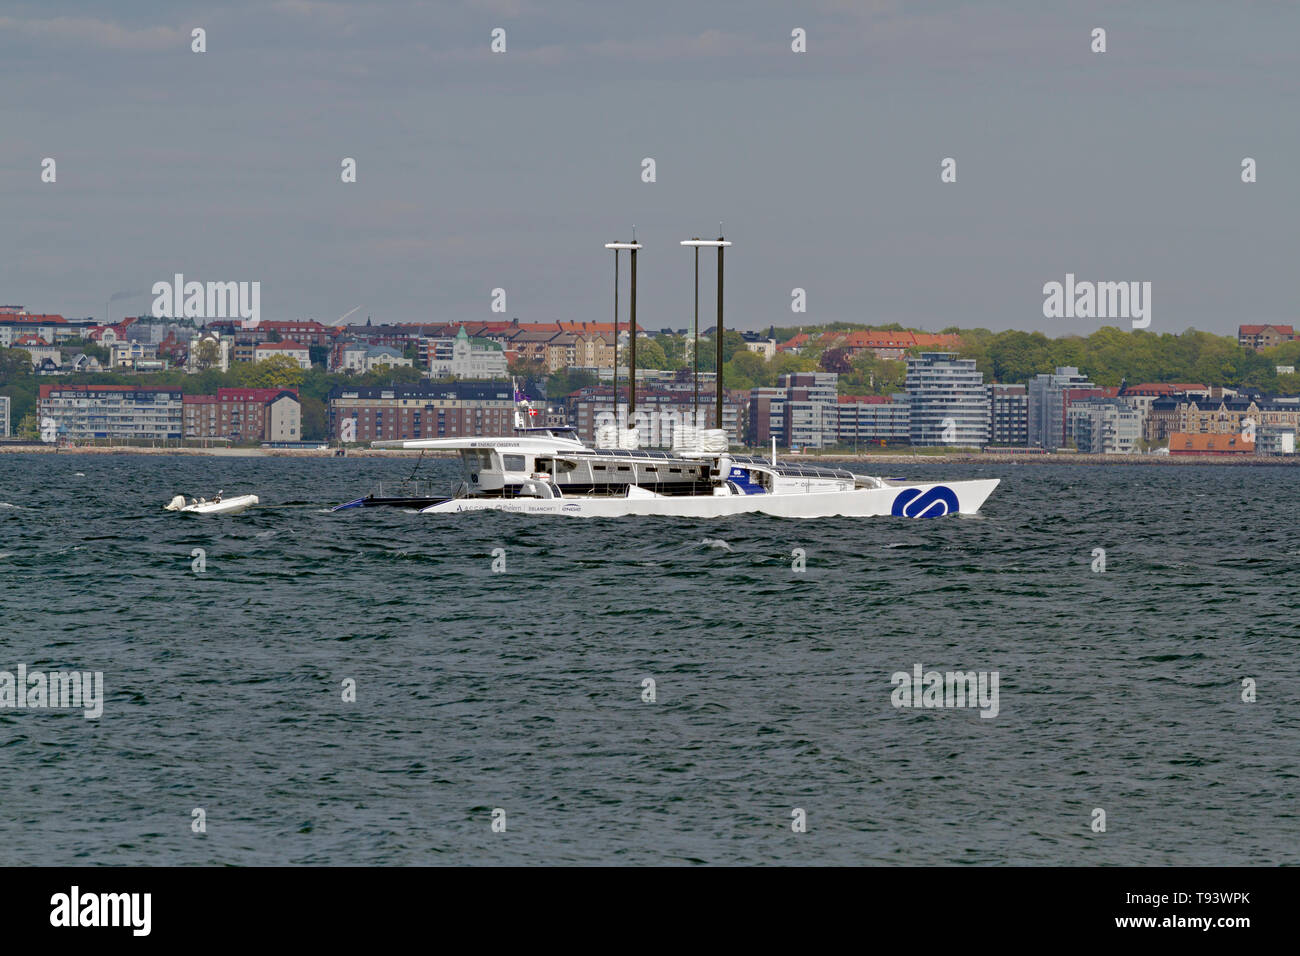 El OBSERVADOR DE ENERGÍA eólica, solar e impulsada por hidrógeno en el Sound Øresund, al norte de Elsinore en su odisea alrededor del mundo, se dirigió a Copenhague. Foto de stock